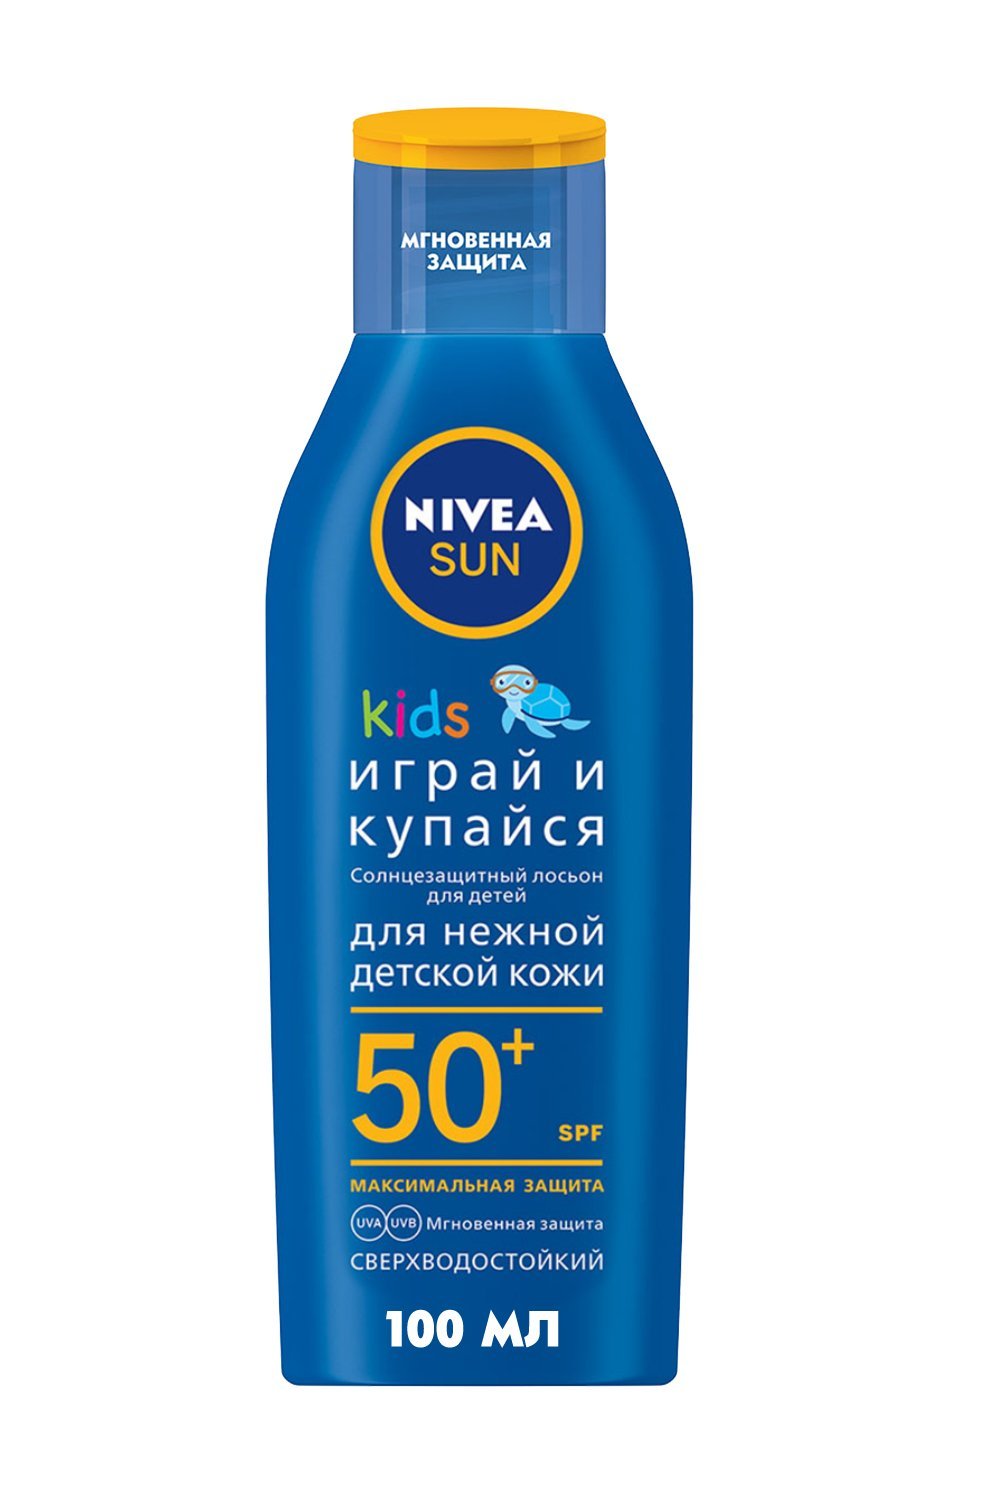 Детский солнцезащитный лосьон Nivea Sun Играй и купайся SPF 50+ для детской кожи от вредных UVA/UVB-лучей и ожогов, 100 мл - фото 1